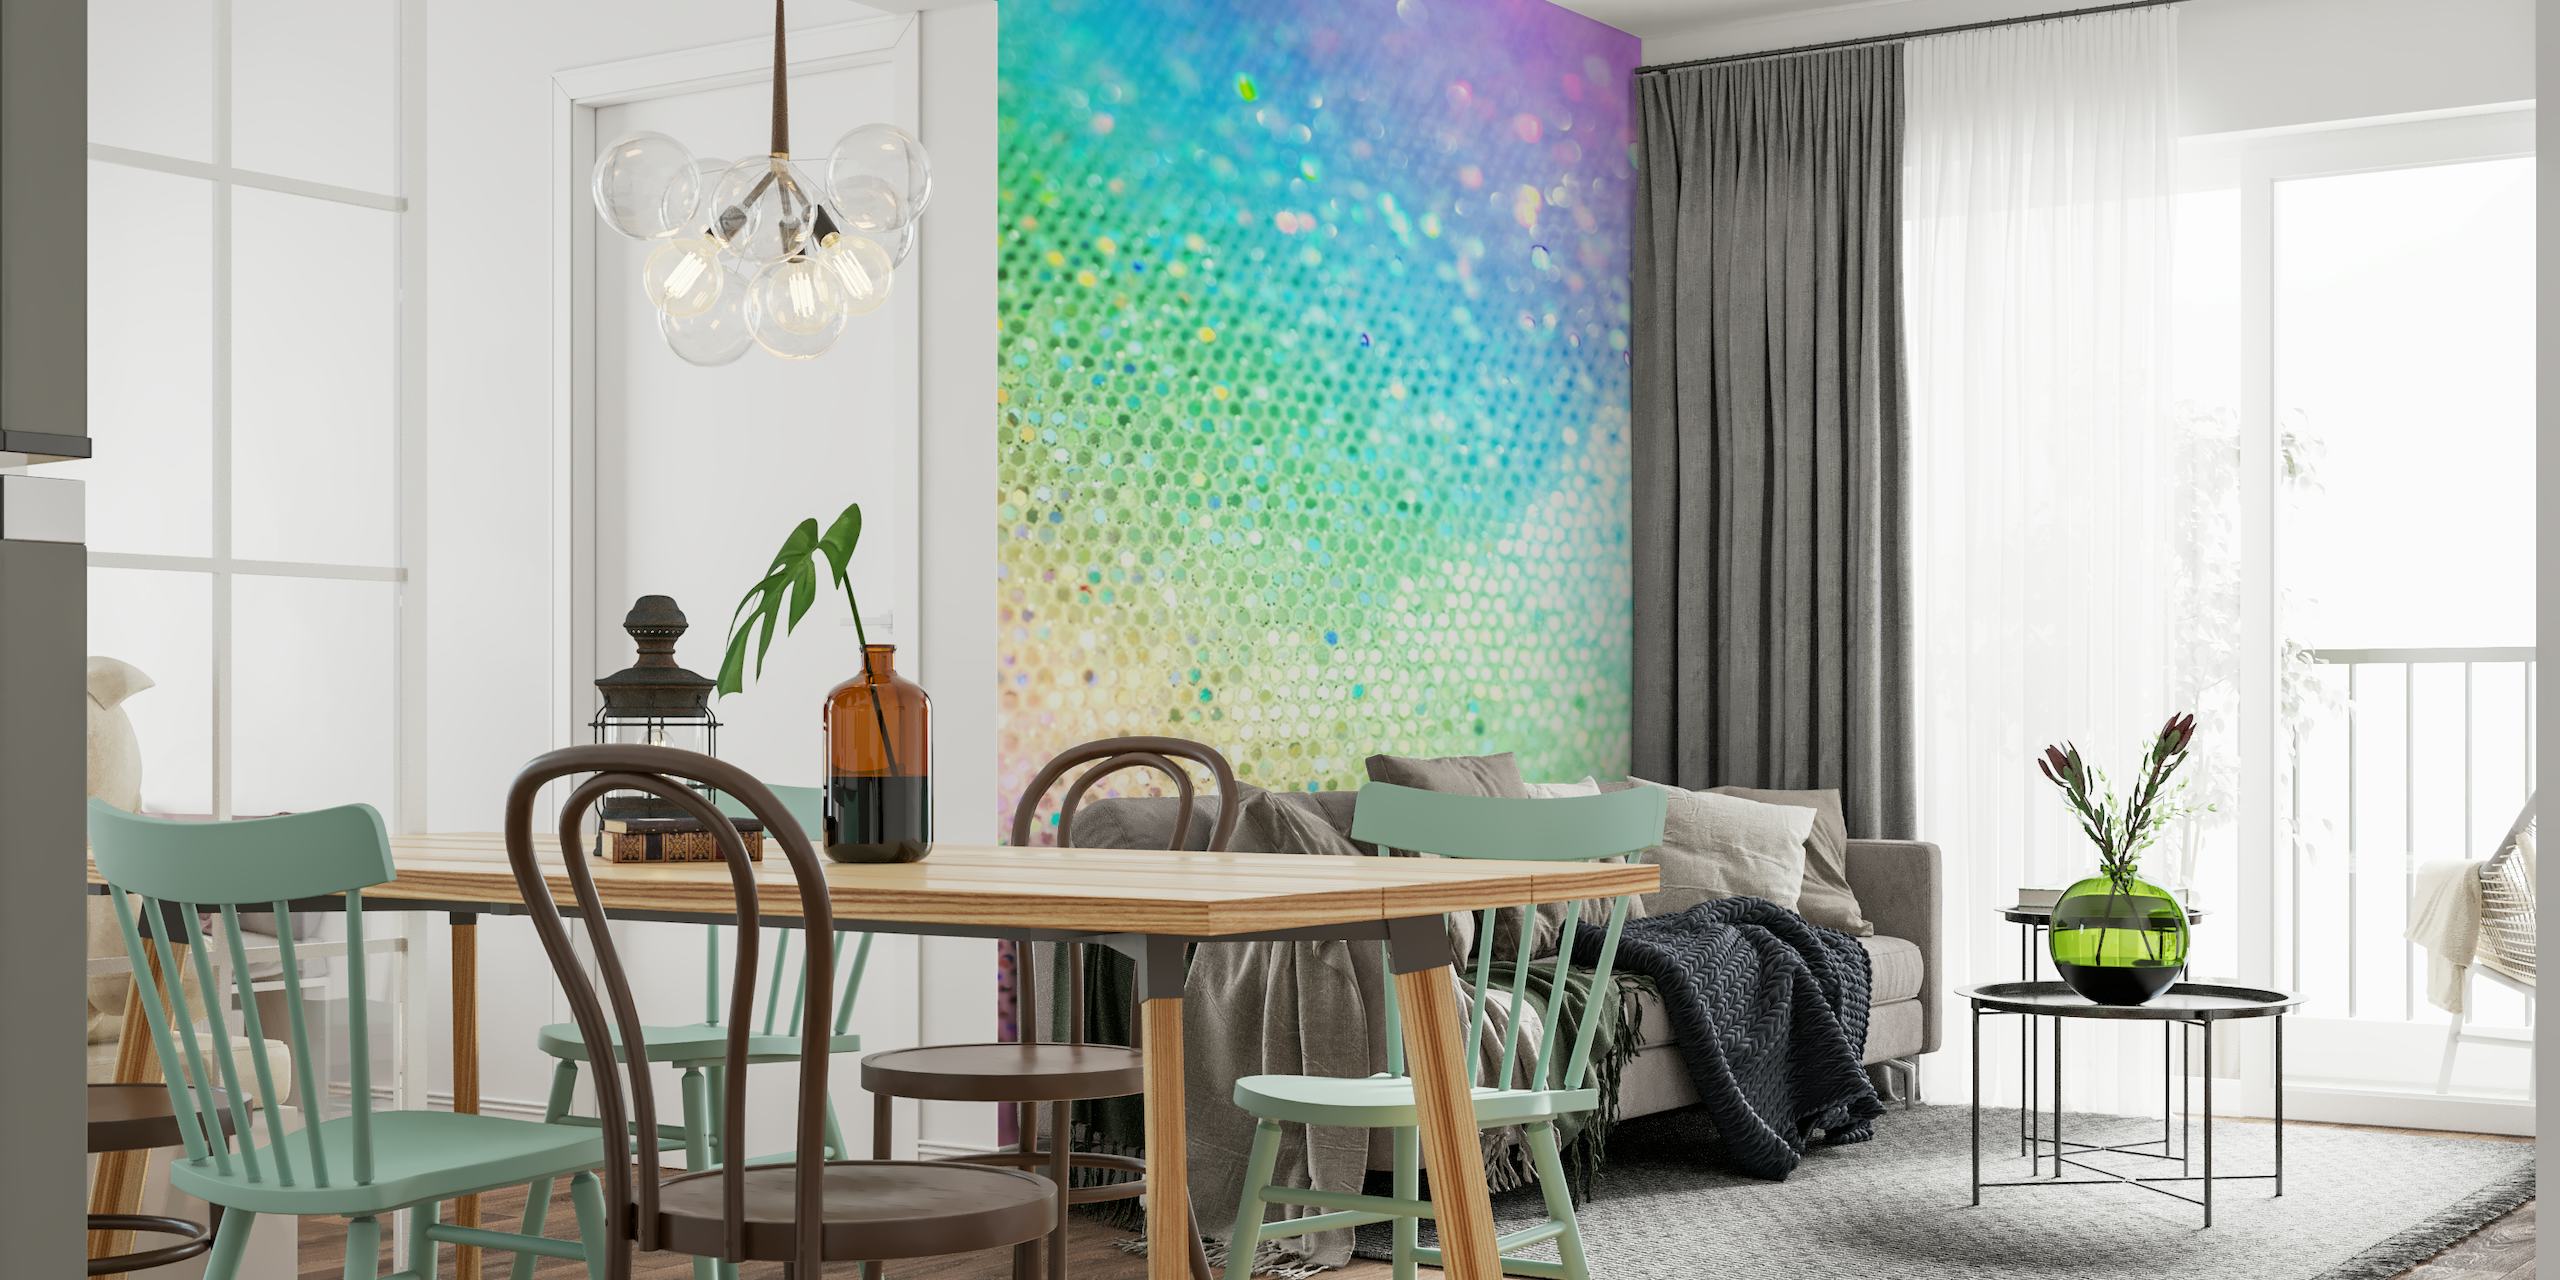 Et farverigt vægmaleri med en gradient af funklende glimmerprikker i regnbuefarver